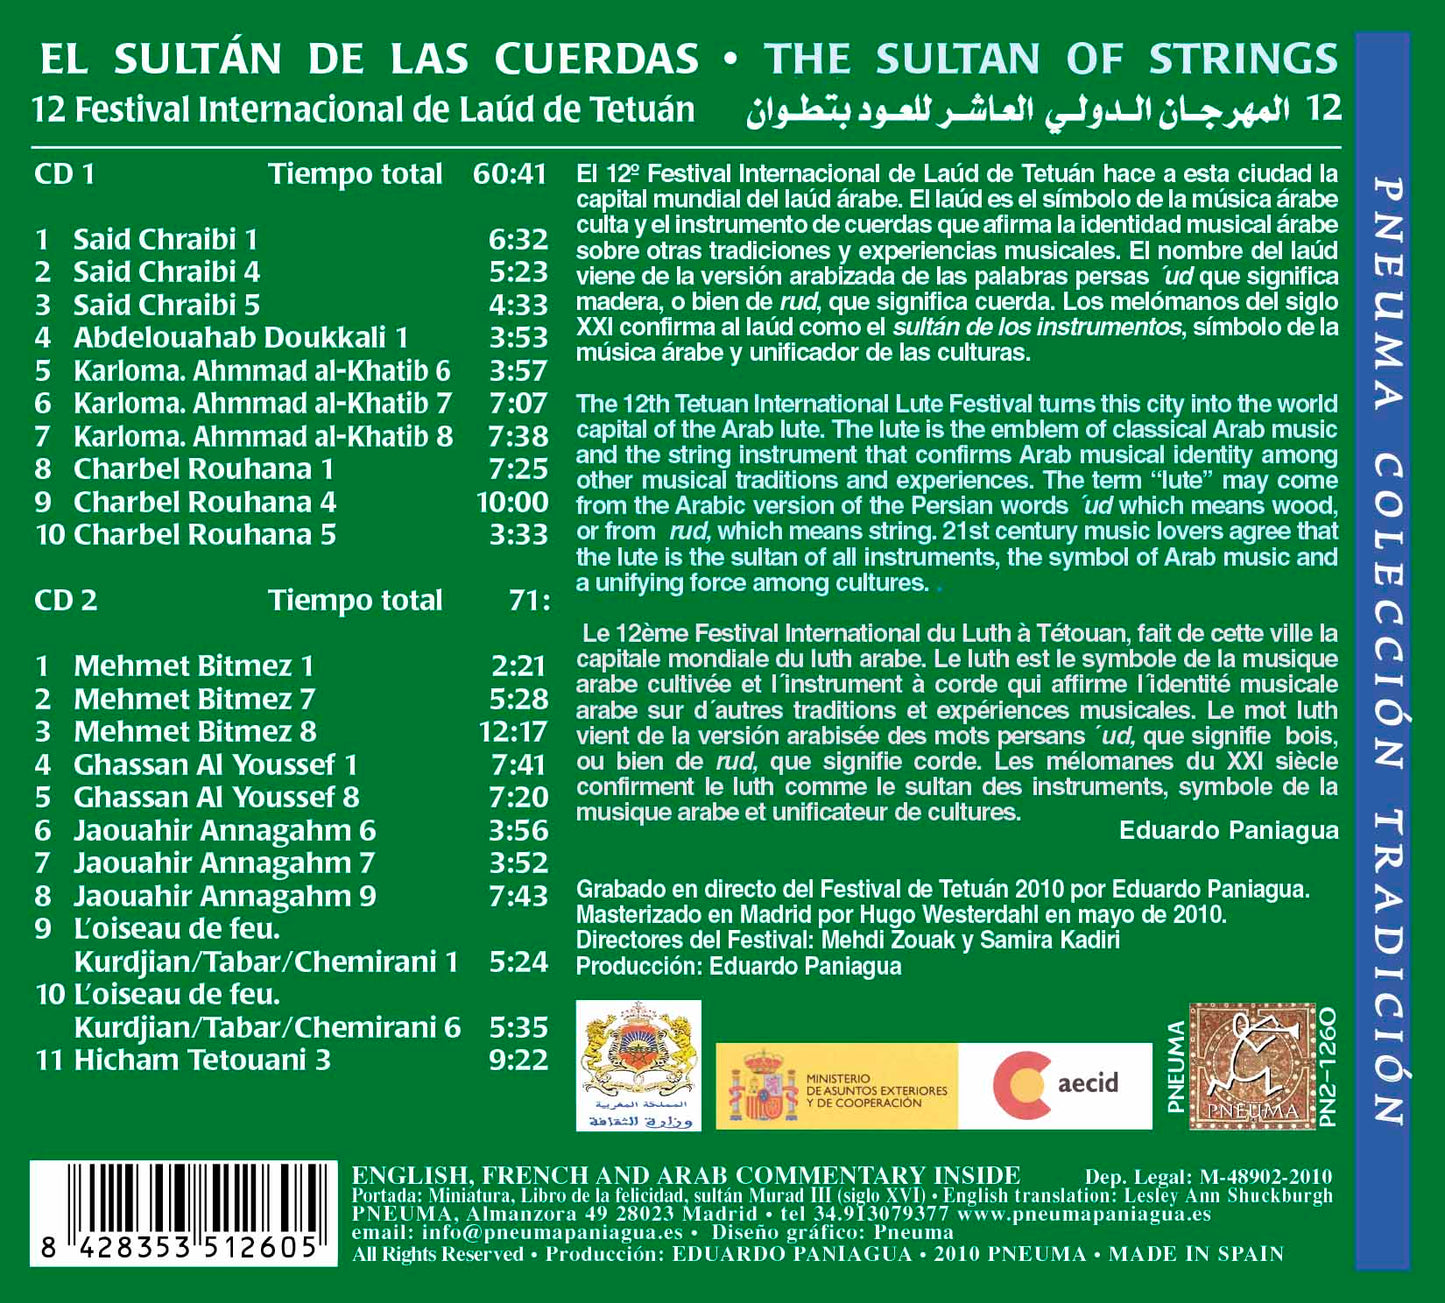 PN 1260 EL SULTÁN DE LAS CUERDAS, LAÚD ÁRABE, DOBLE CD